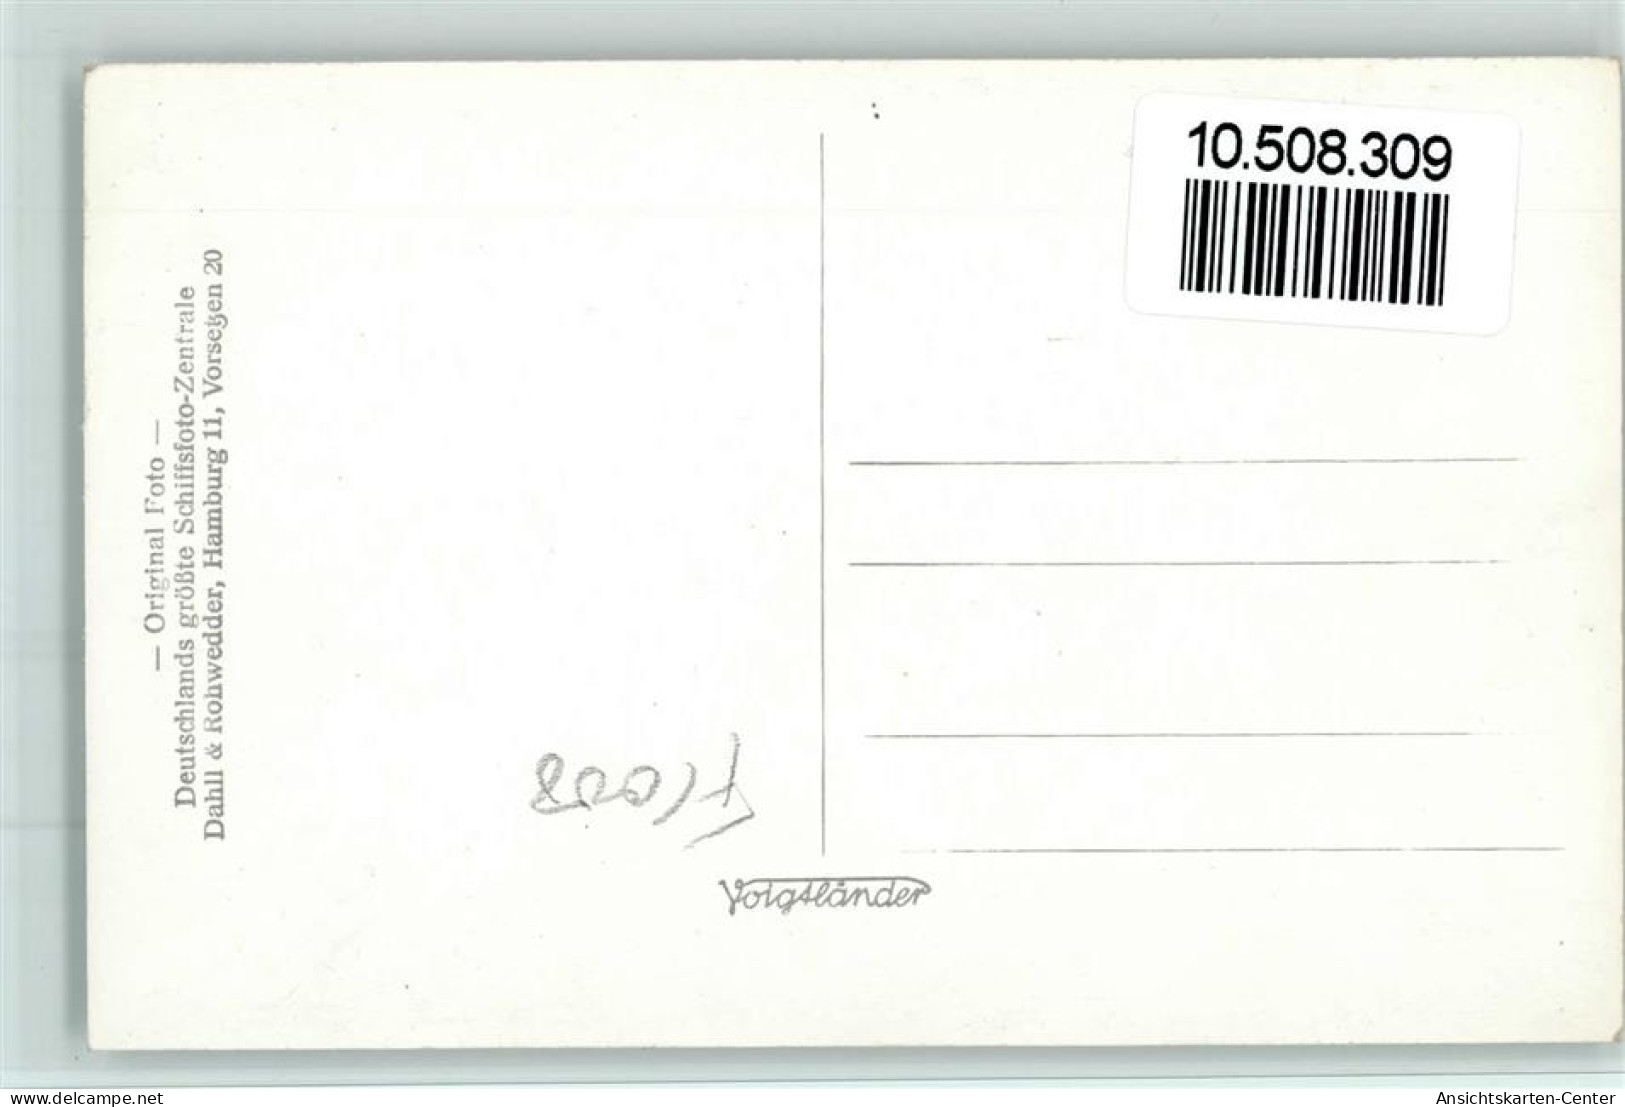 10508309 - Norddeutscher Lloyd Kronprinzessin Cecilie - Passagiersschepen